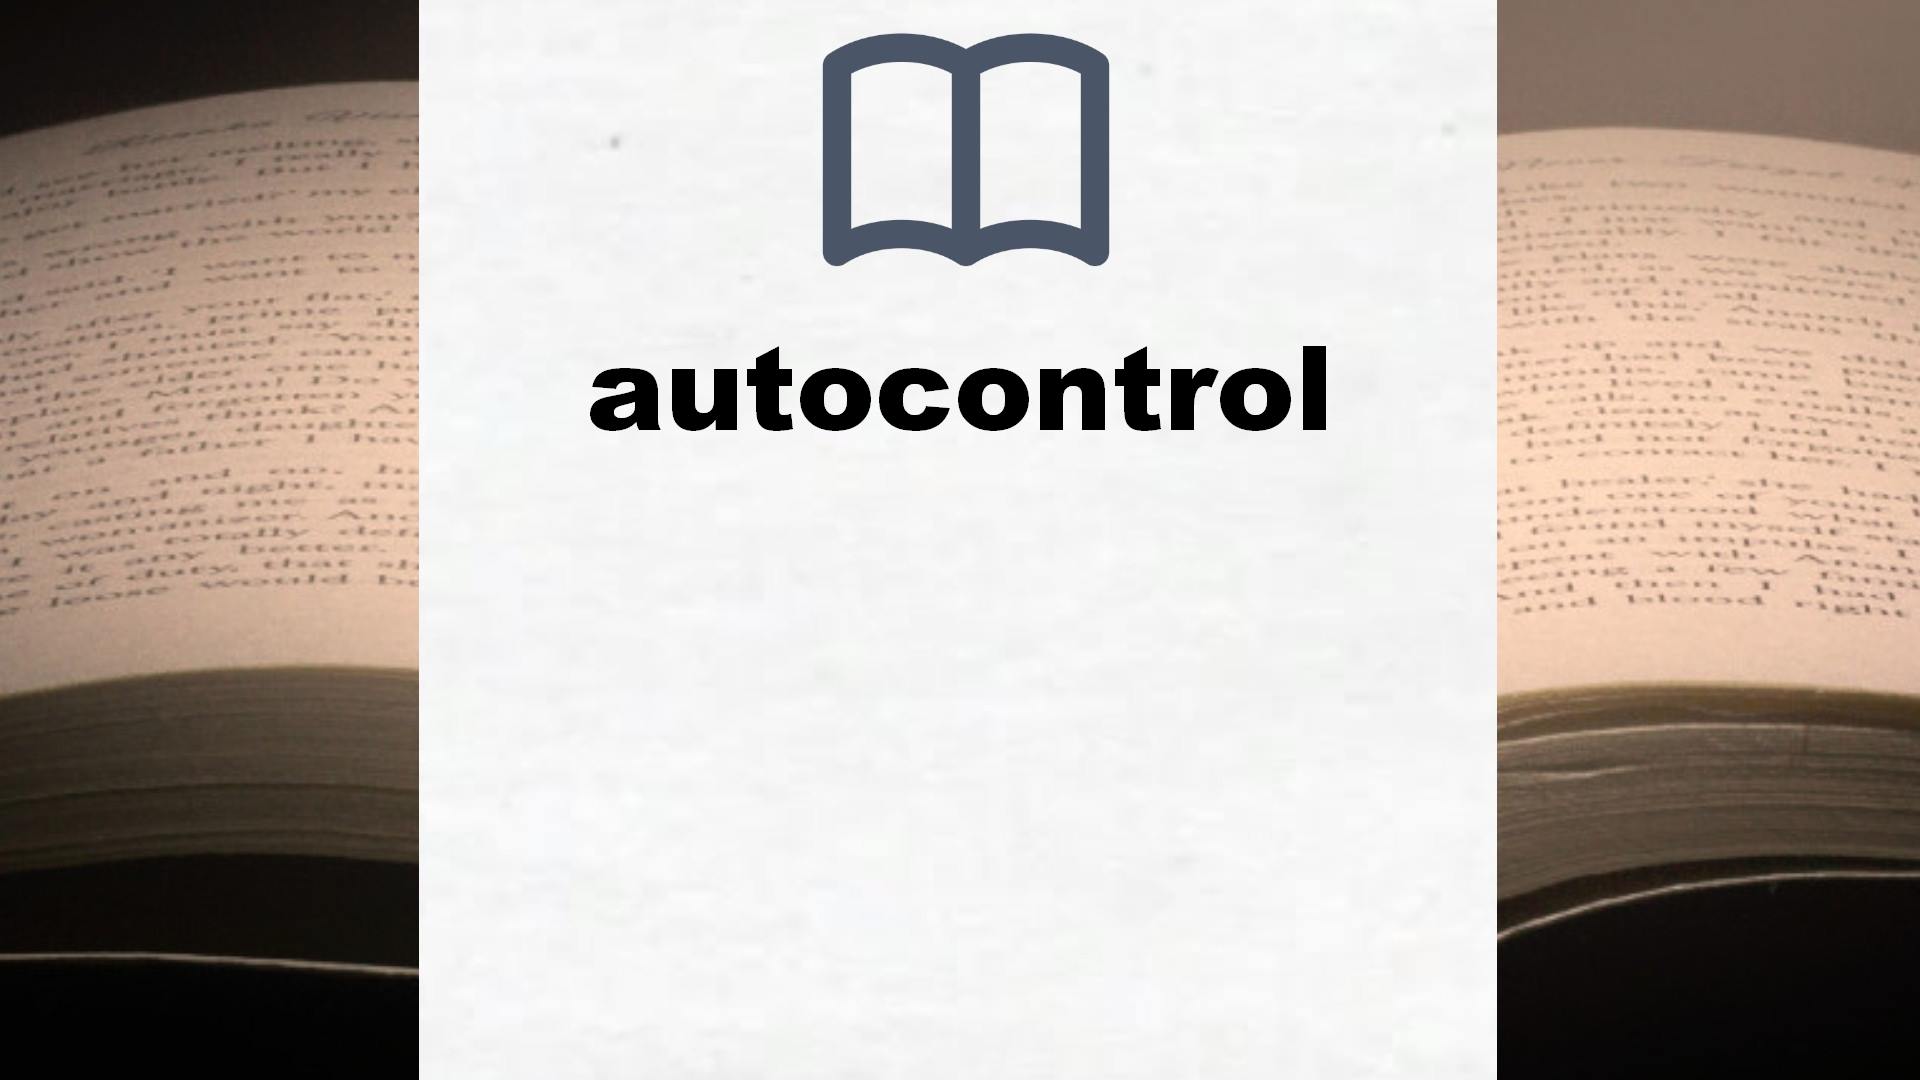 Libros sobre autocontrol